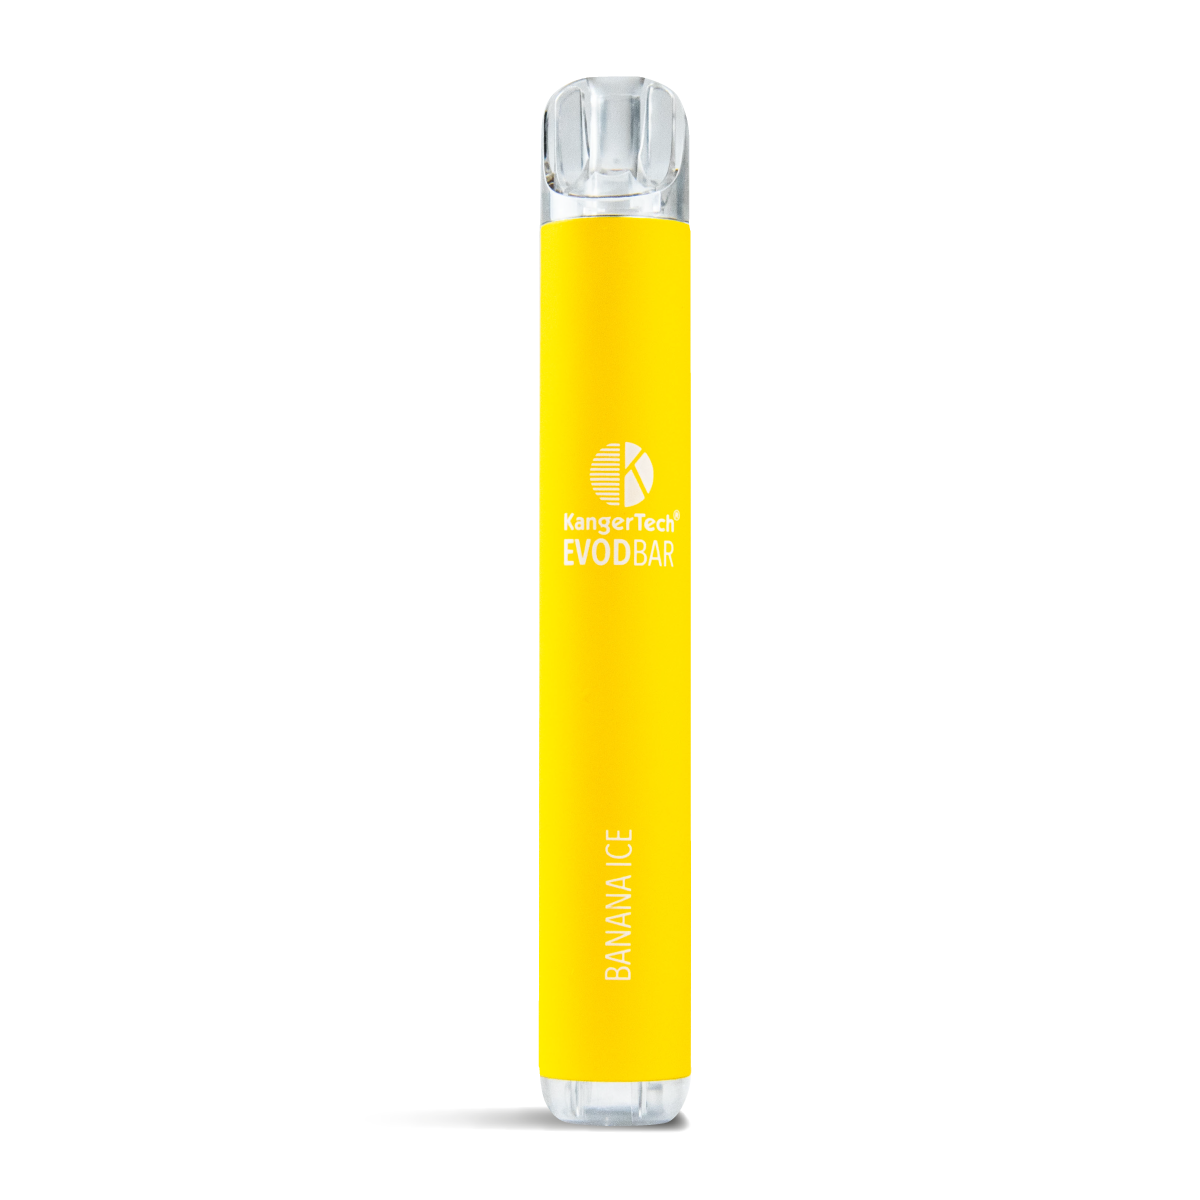 Banana Ice EVOD Bar Disposable Vape Pod Kit for UK Wholesale